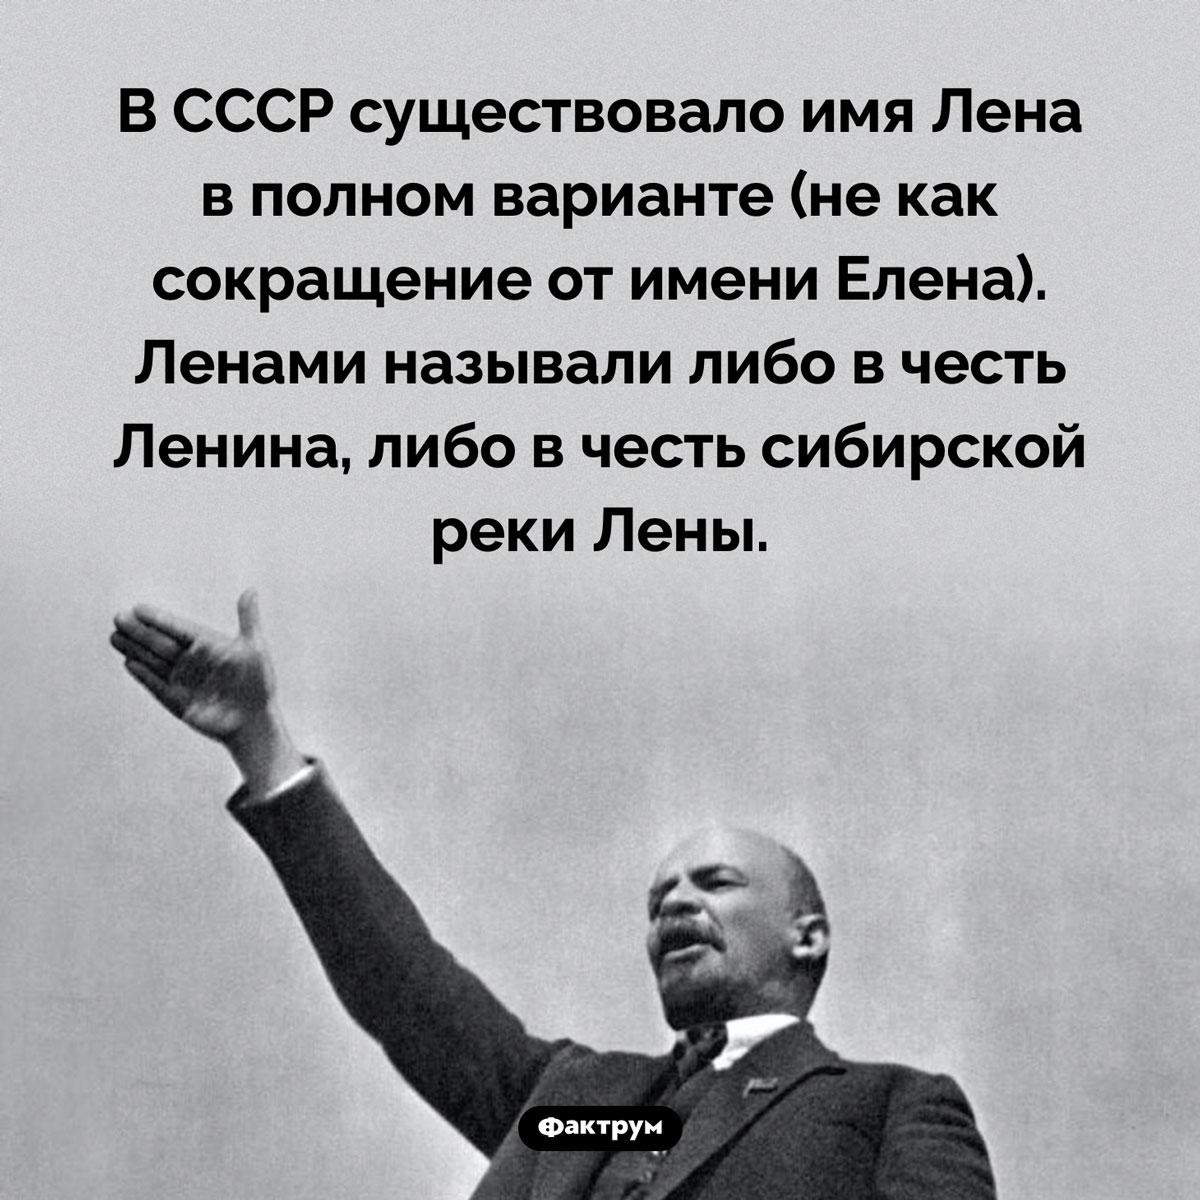 Лена как полное имя. В СССР существовало имя Лена в полном варианте (не как сокращение от имени Елена). Ленами называли либо в честь Ленина, либо в честь сибирской реки Лены.